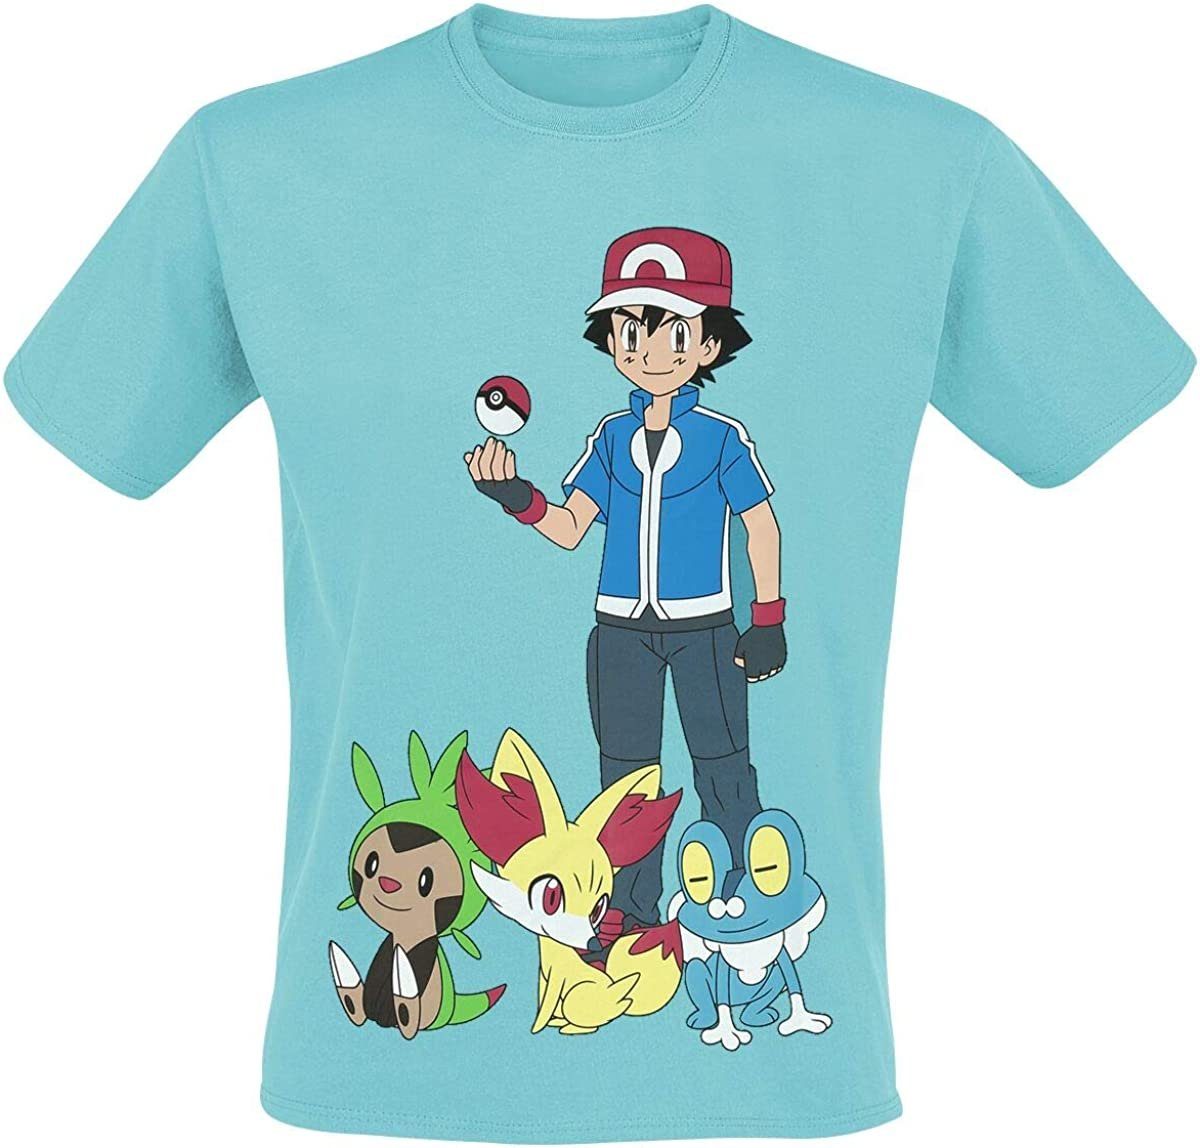 POKÉMON Print-Shirt Pokemon T-Shirt türkis Herren + Jugendliche S M L XL